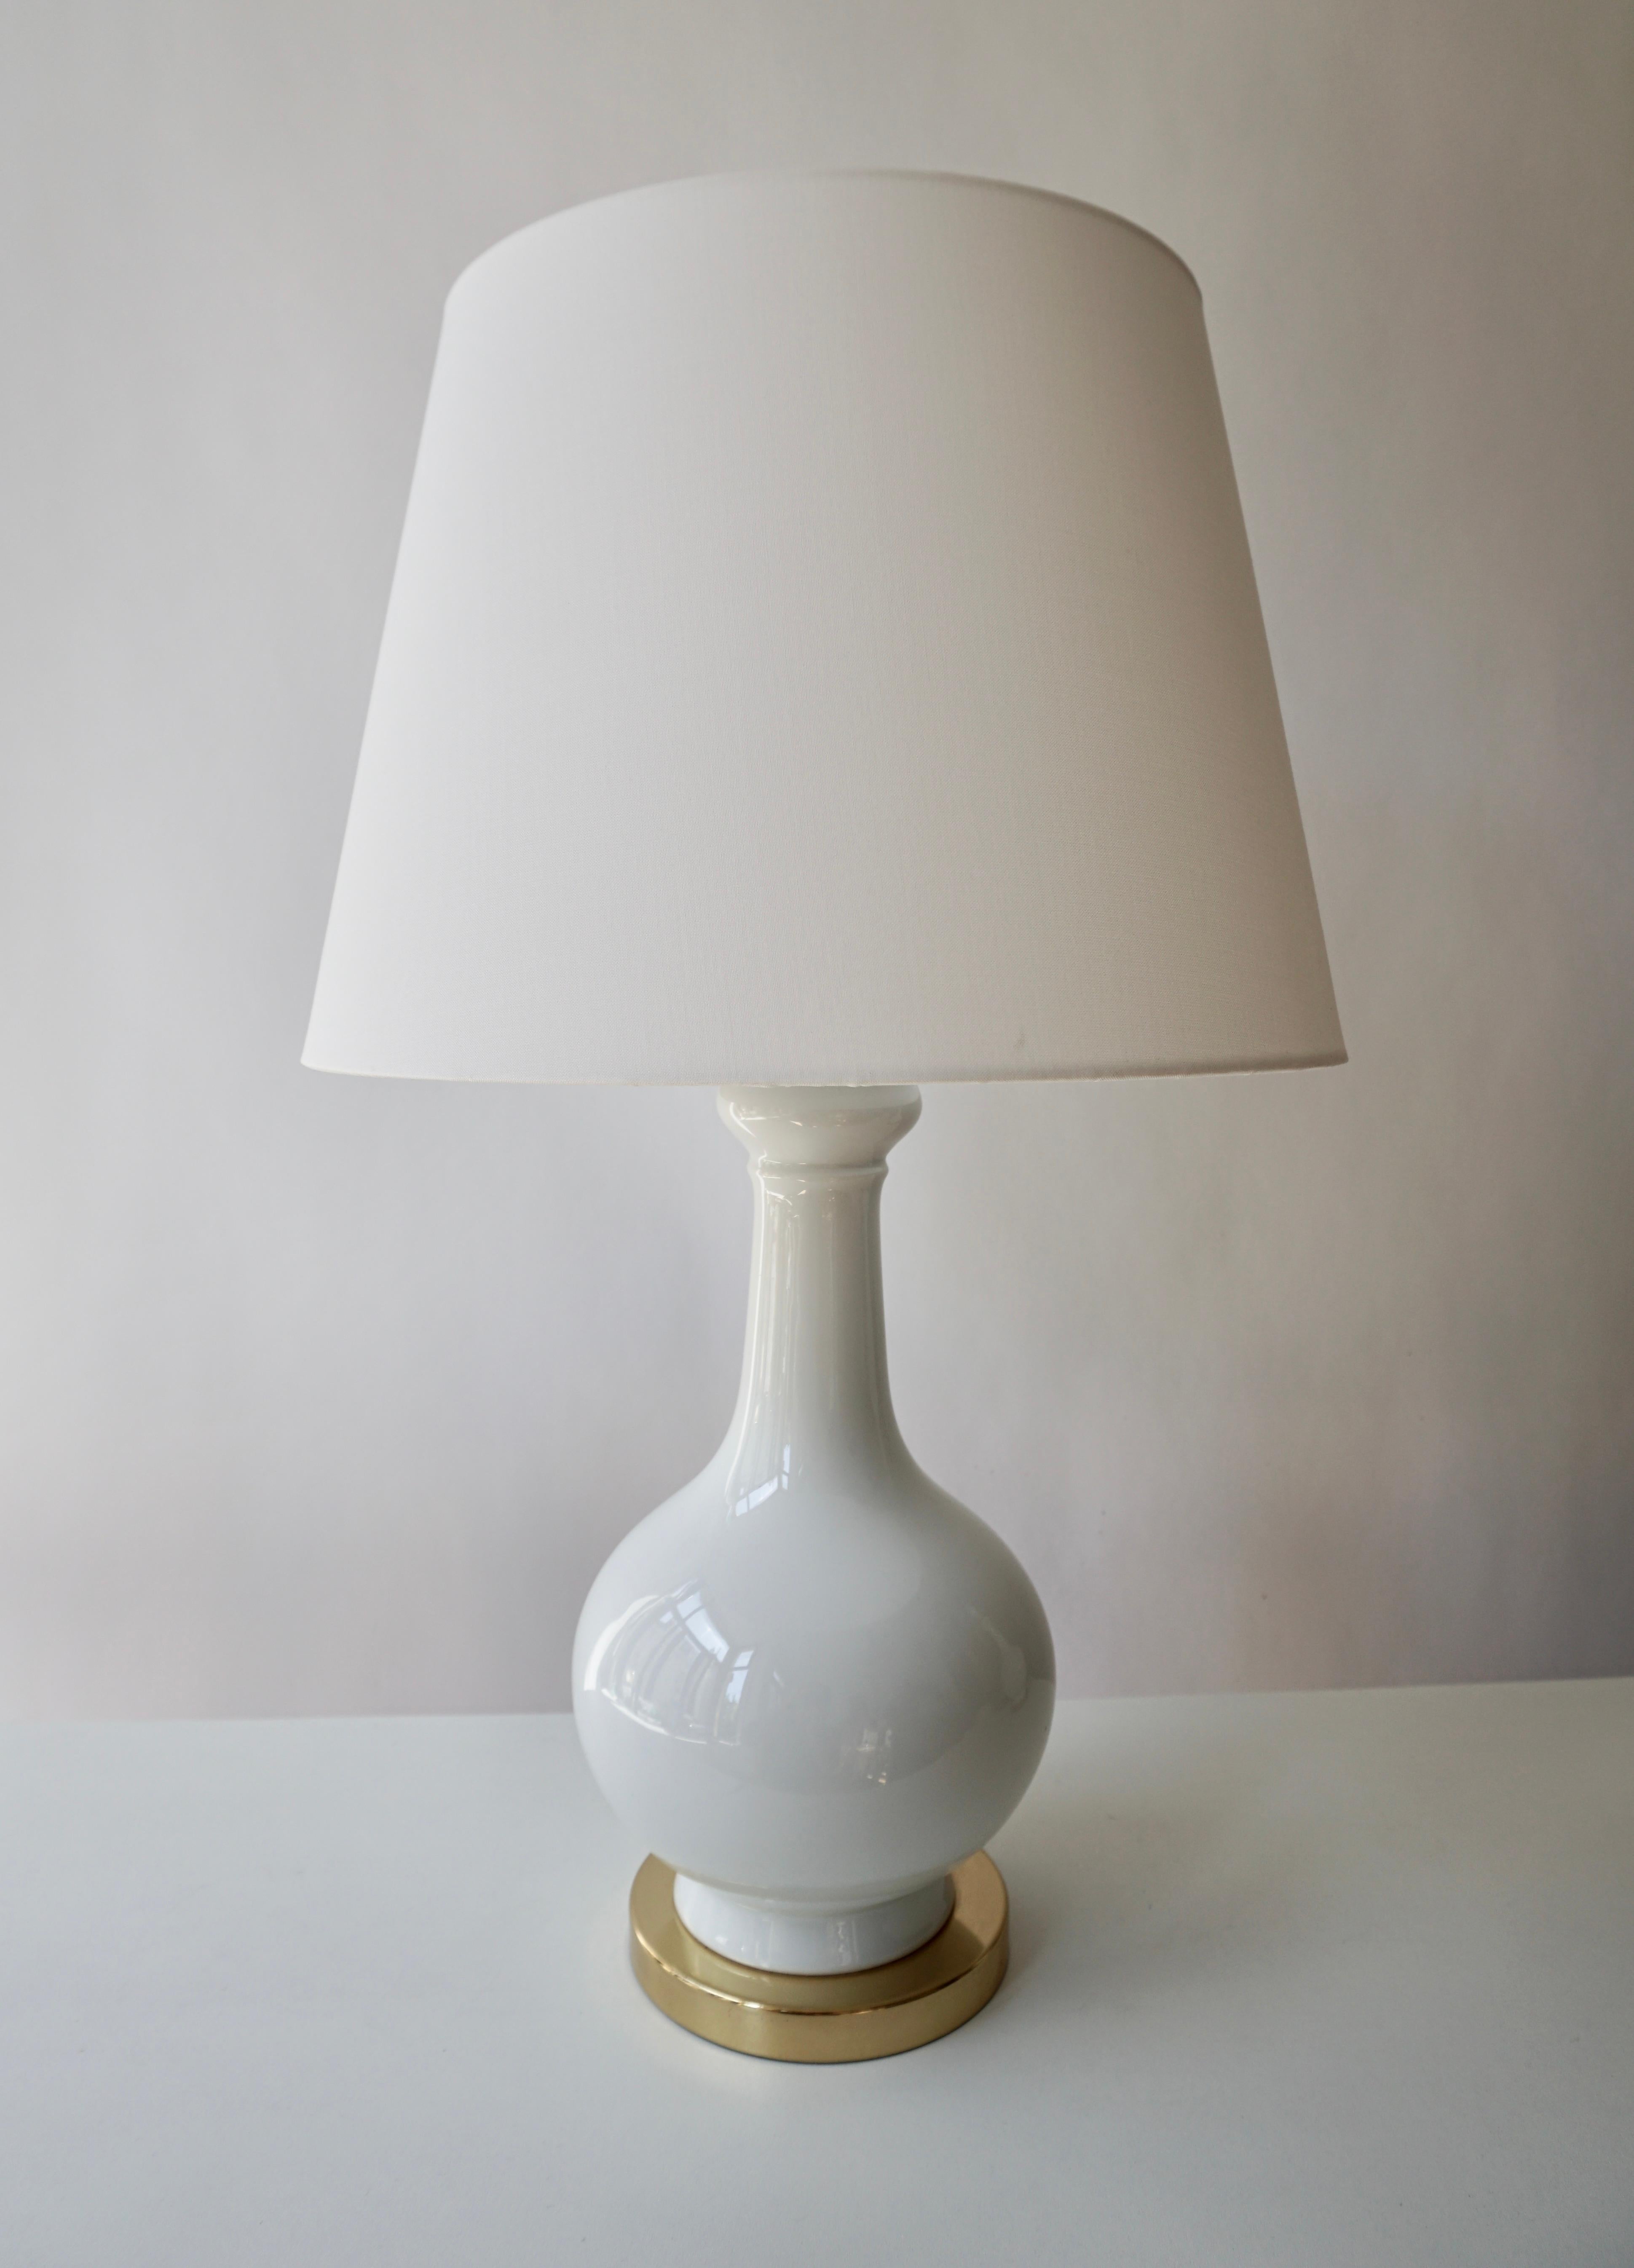 Deux élégantes lampes de table italiennes en porcelaine blanche, de style moderne du milieu du siècle, sur une base en laiton.
Mesures : Diamètre 16 cm.
Hauteur 36 cm.

Les abat-jour ne sont pas inclus dans le prix.